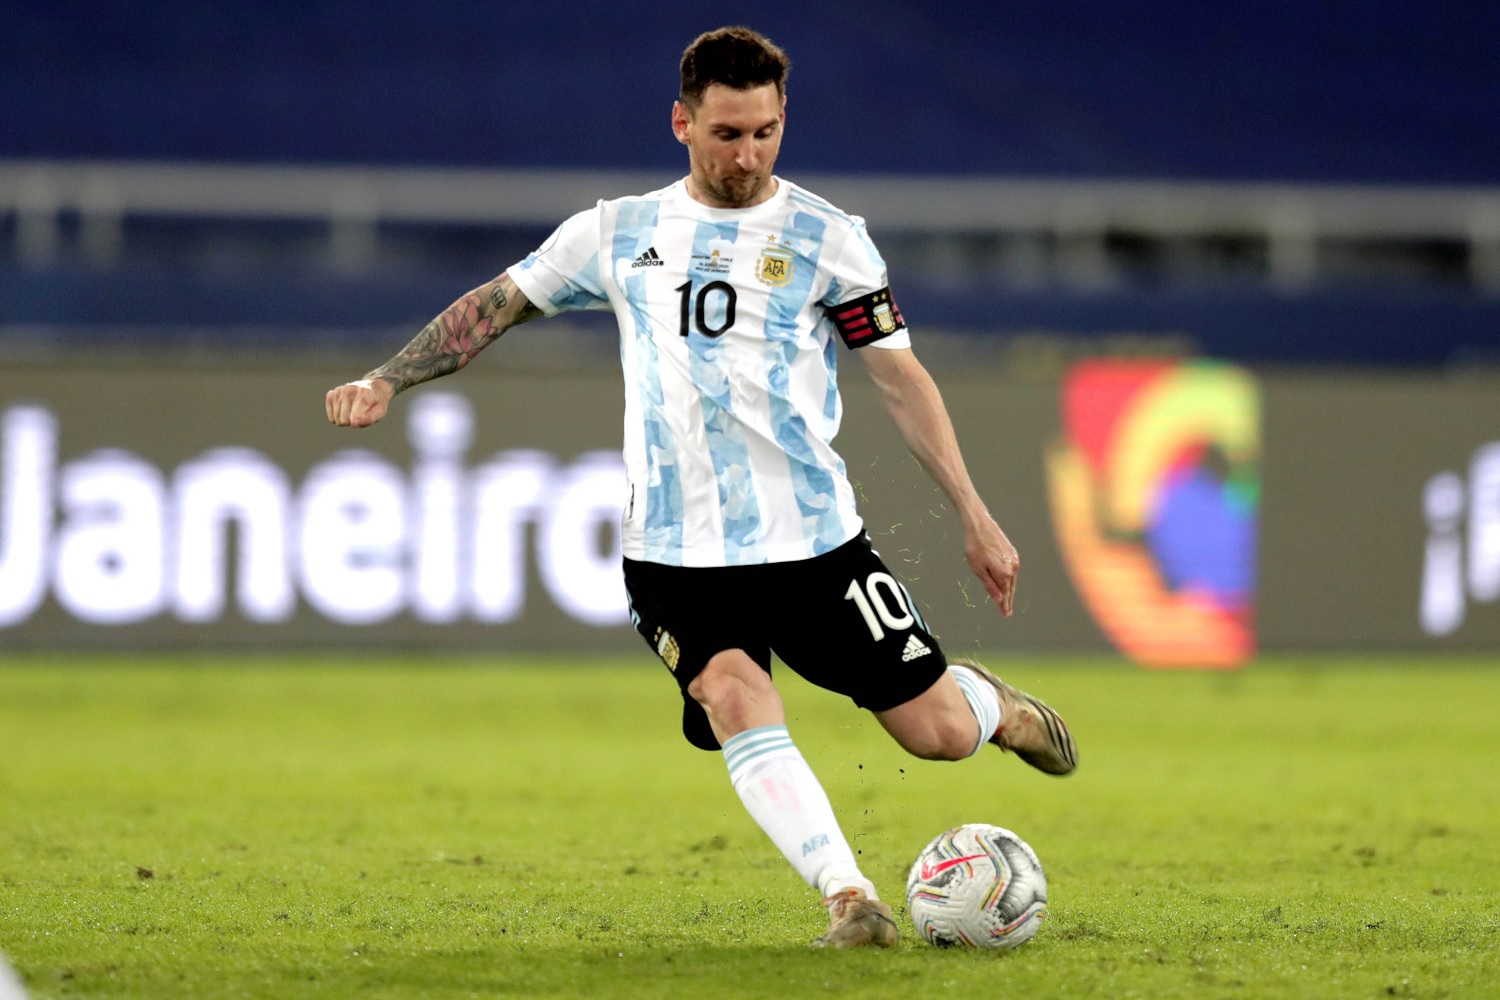 El Detalle En Los Botines De Messi Que Preocupa A Adidas Mendoza Post